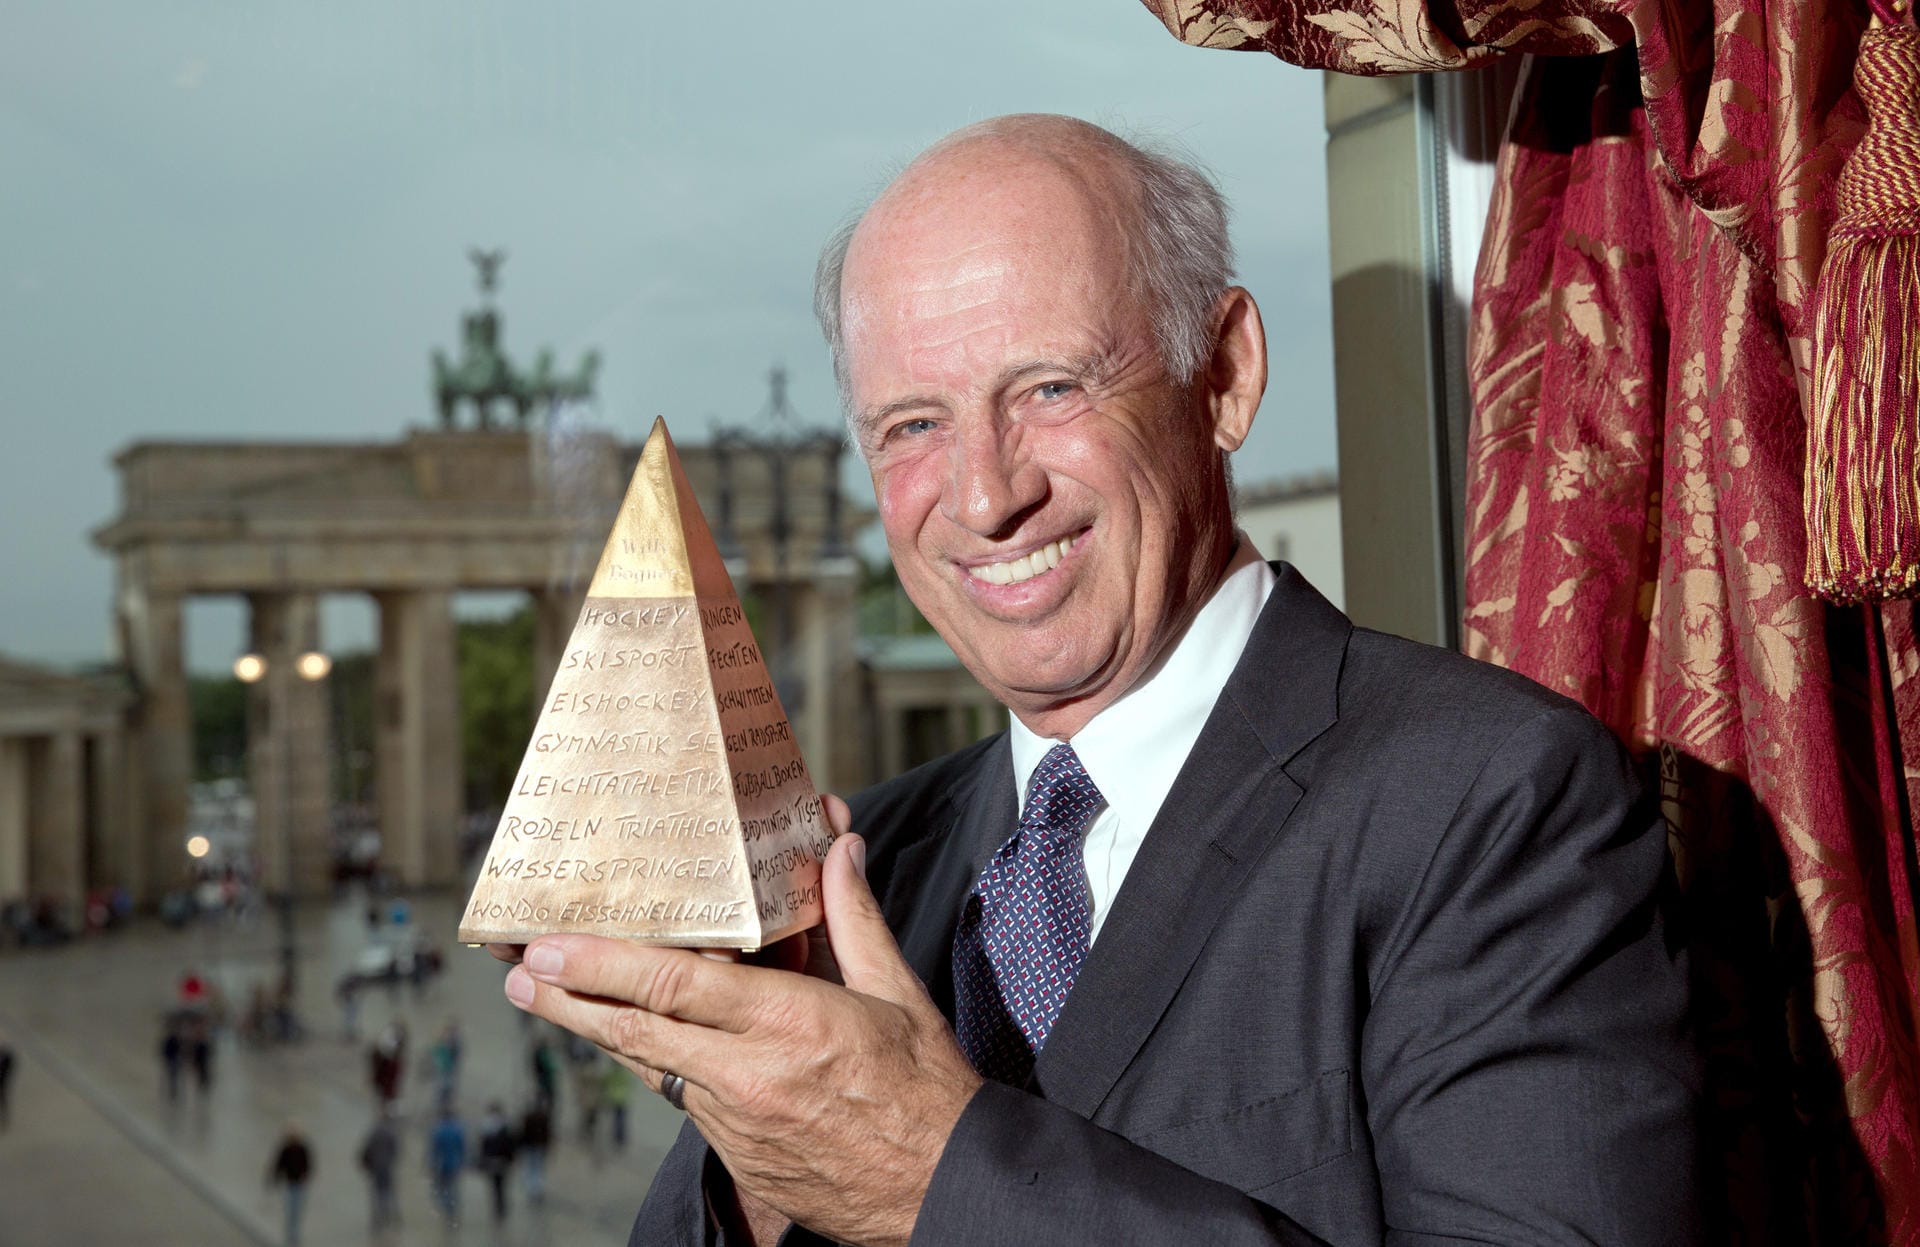 Der Unternehmer Willy Bogner wurde im Laufe seiner Karriere vielfach geehrt. Hier posiert er mit der Goldenen Sportpyramide von der deutschen Sporthilfe, die er 2013 erhielt.